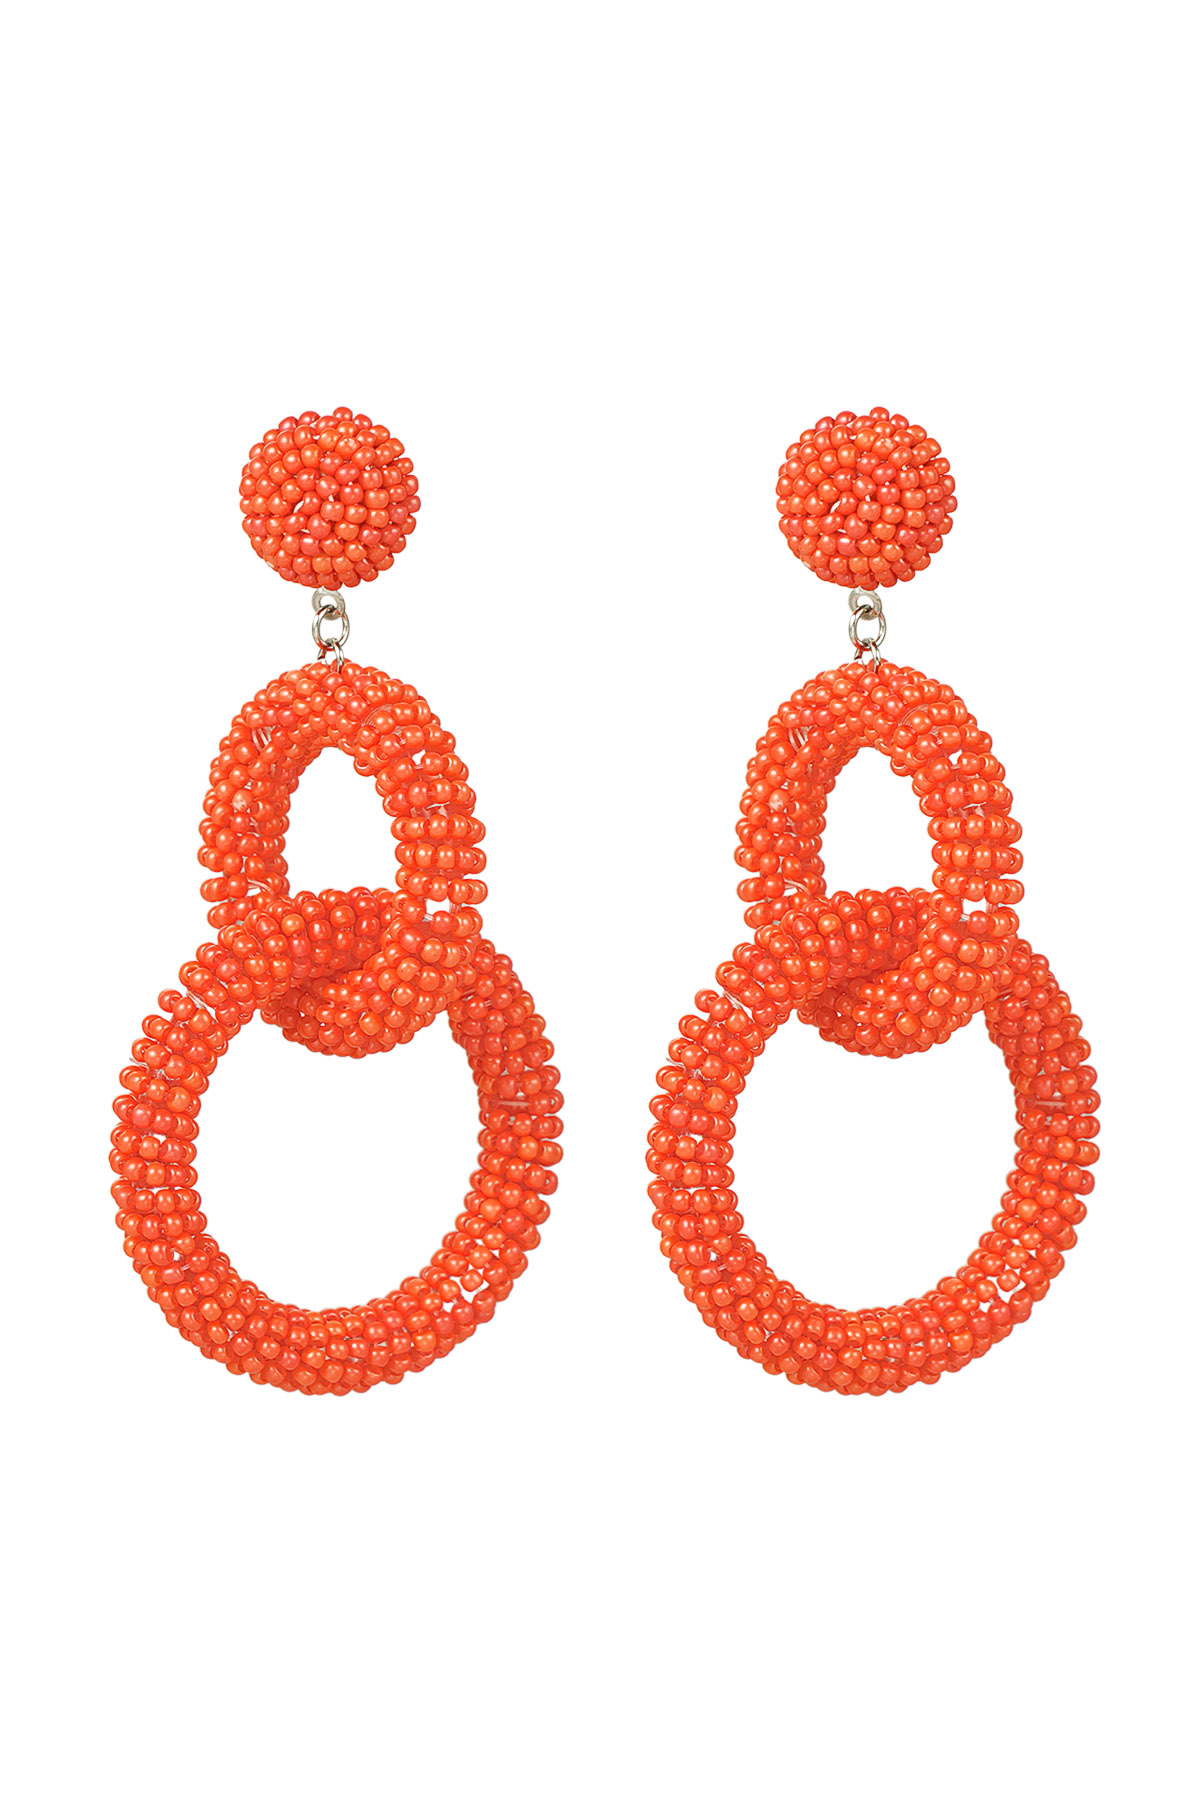 Boucles d'oreilles perlées au crochet - orange h5 